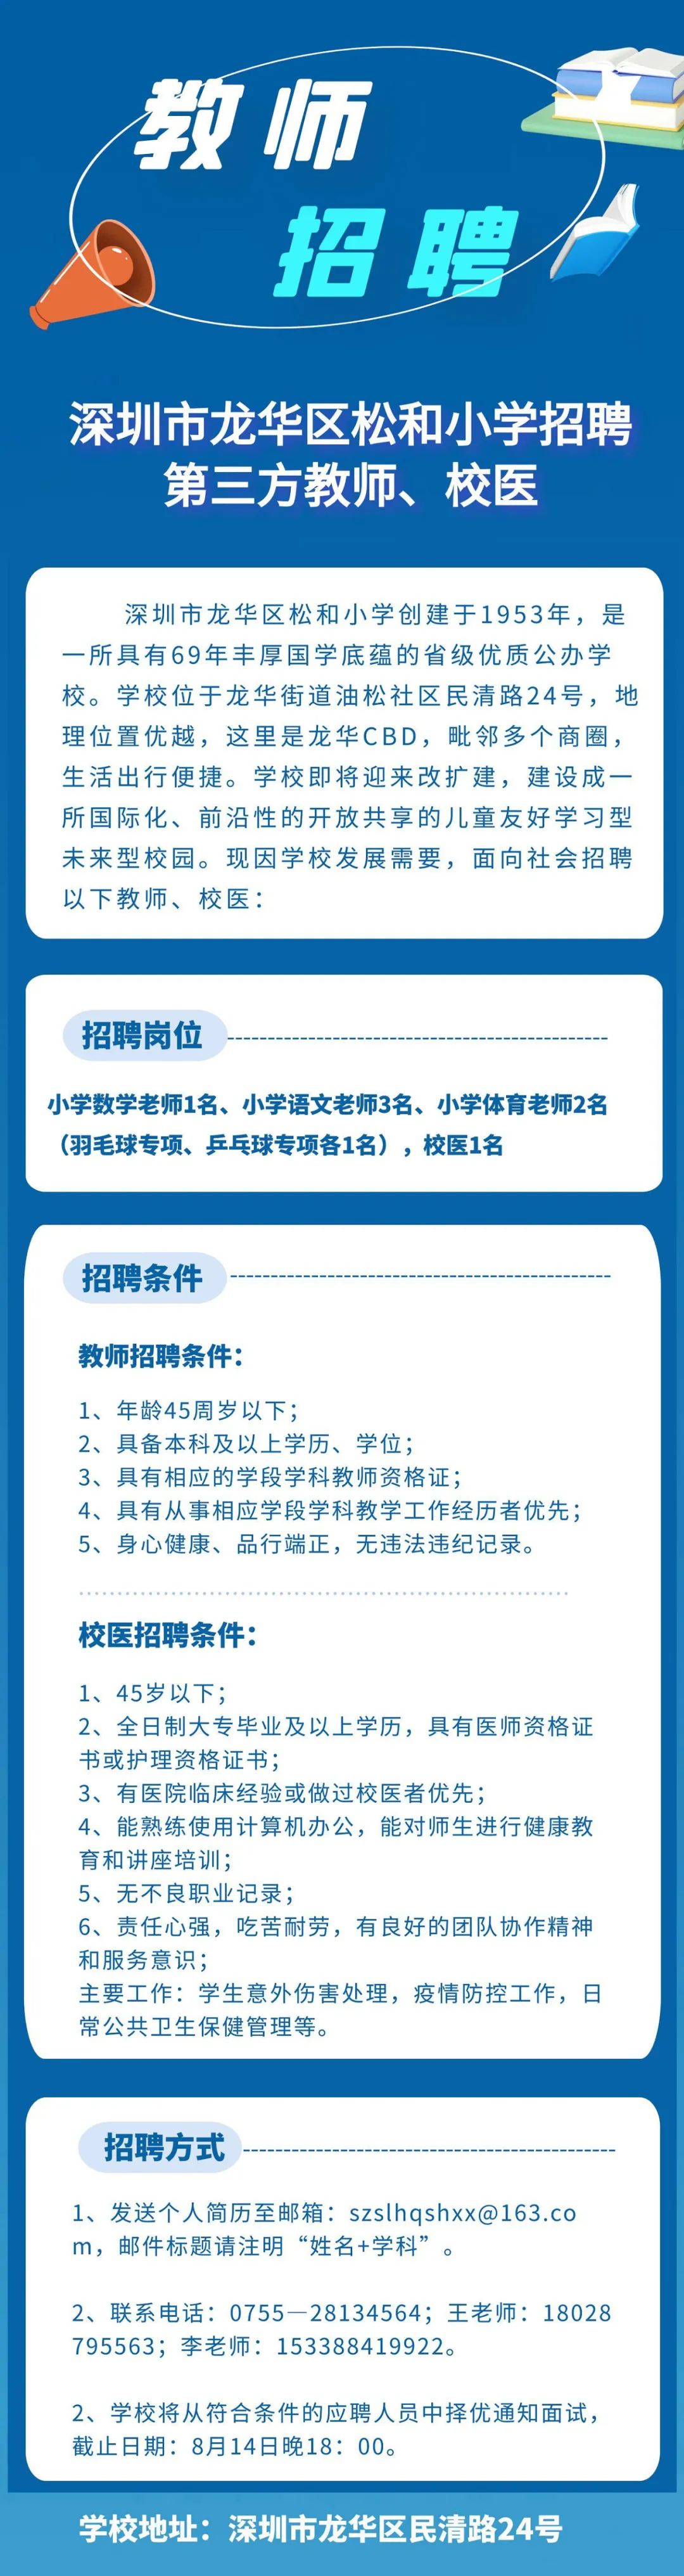 深圳市龙华区松和小学招聘小学第三方教师、校医